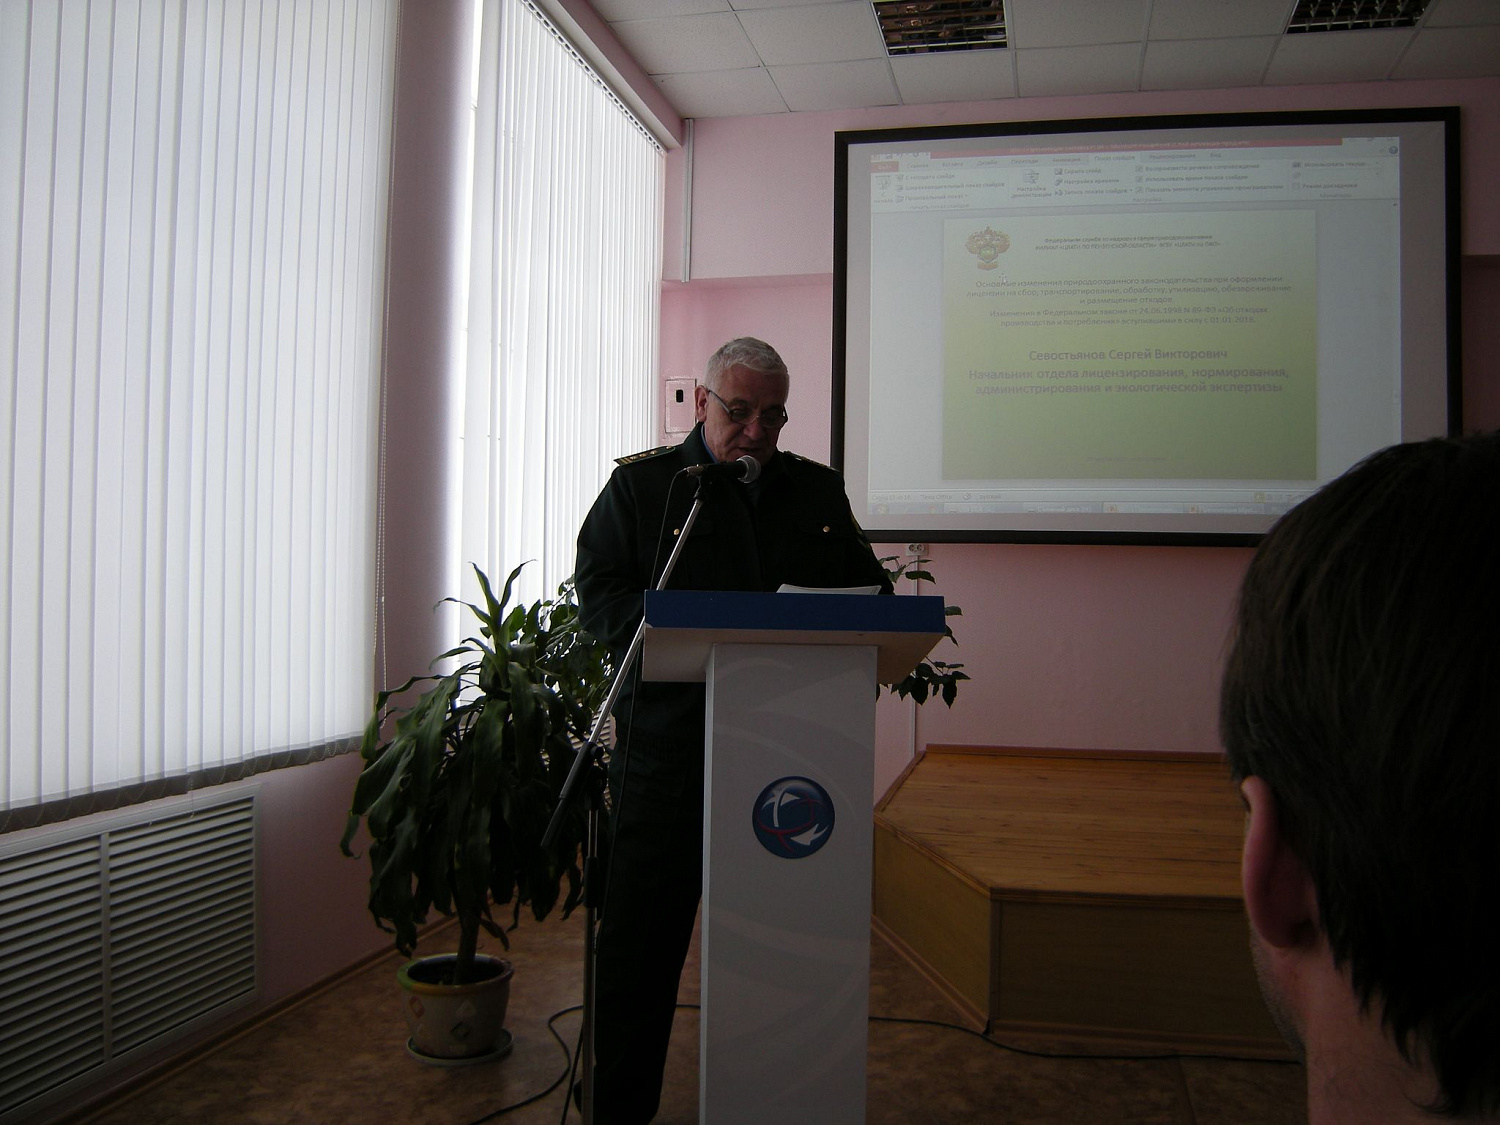 Филиалом «ЦЛАТИ по Пензенской области» совместно с Управлением Росприроднадзора по Пензенской области был проведен семинар